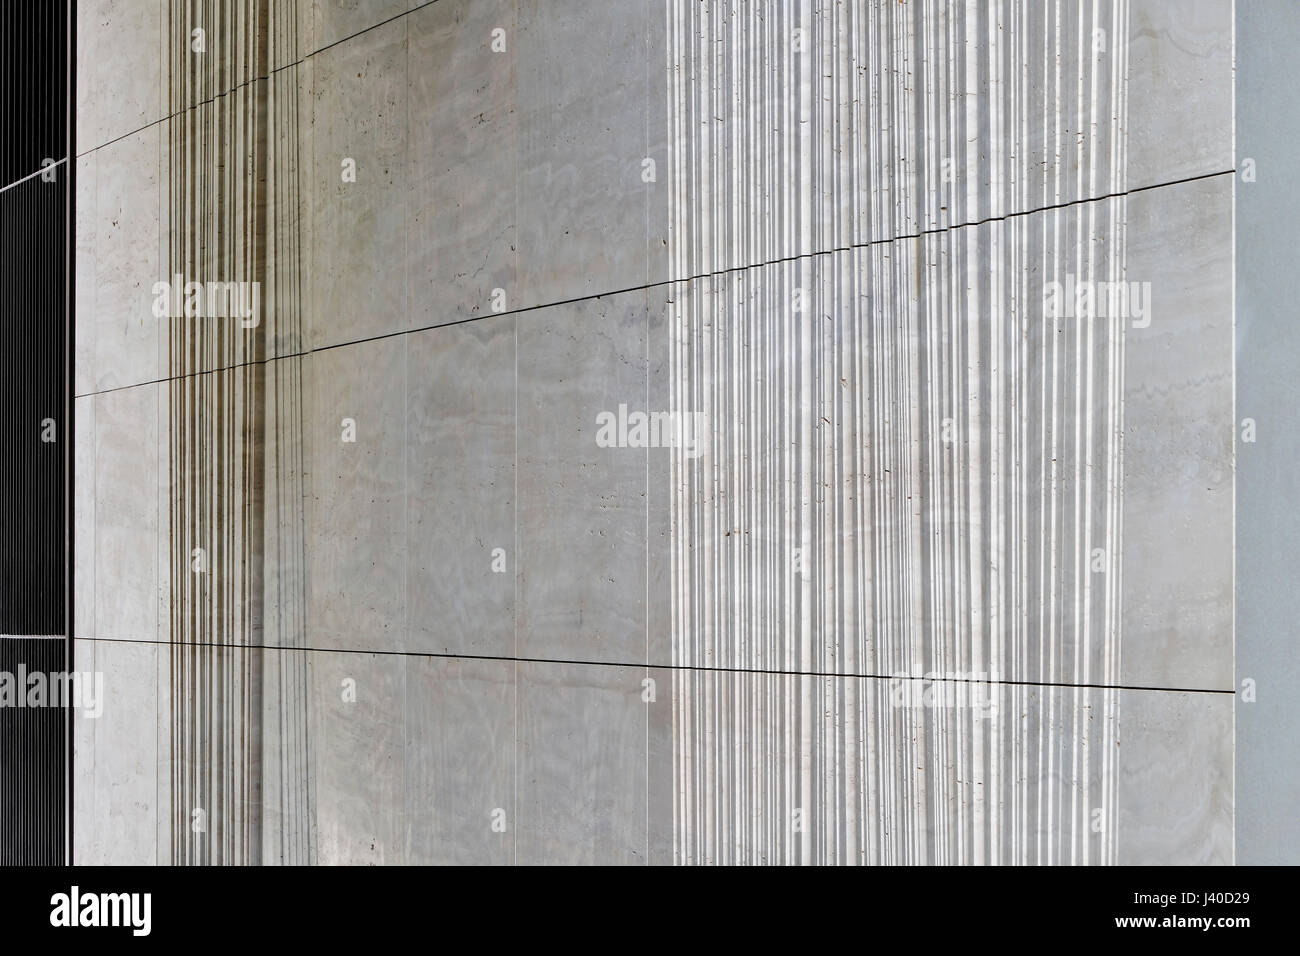 Dettaglio di travertino della muratura. Chancery Lane, Londra, Regno Unito. Architetto: Bennetts Associates Architects, 2015. Foto Stock